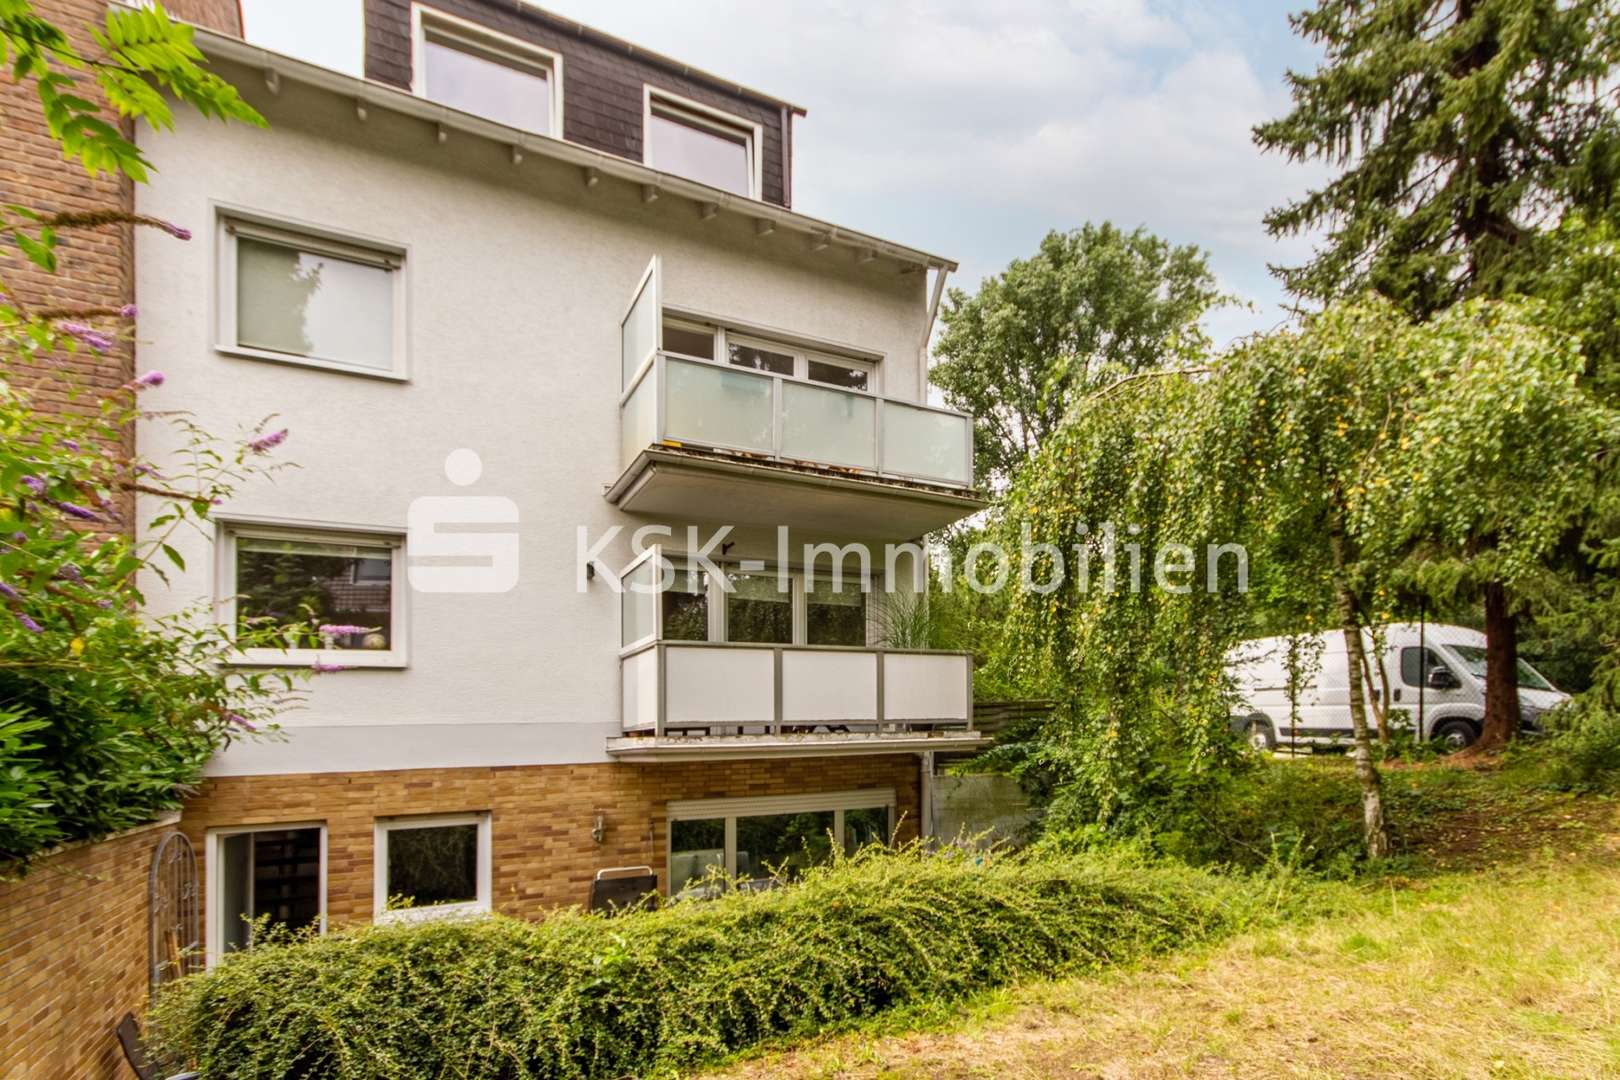 115828 Rückansicht - Mehrfamilienhaus in 50829 Köln / Bocklemünd/Mengenich mit 235m² als Kapitalanlage günstig kaufen